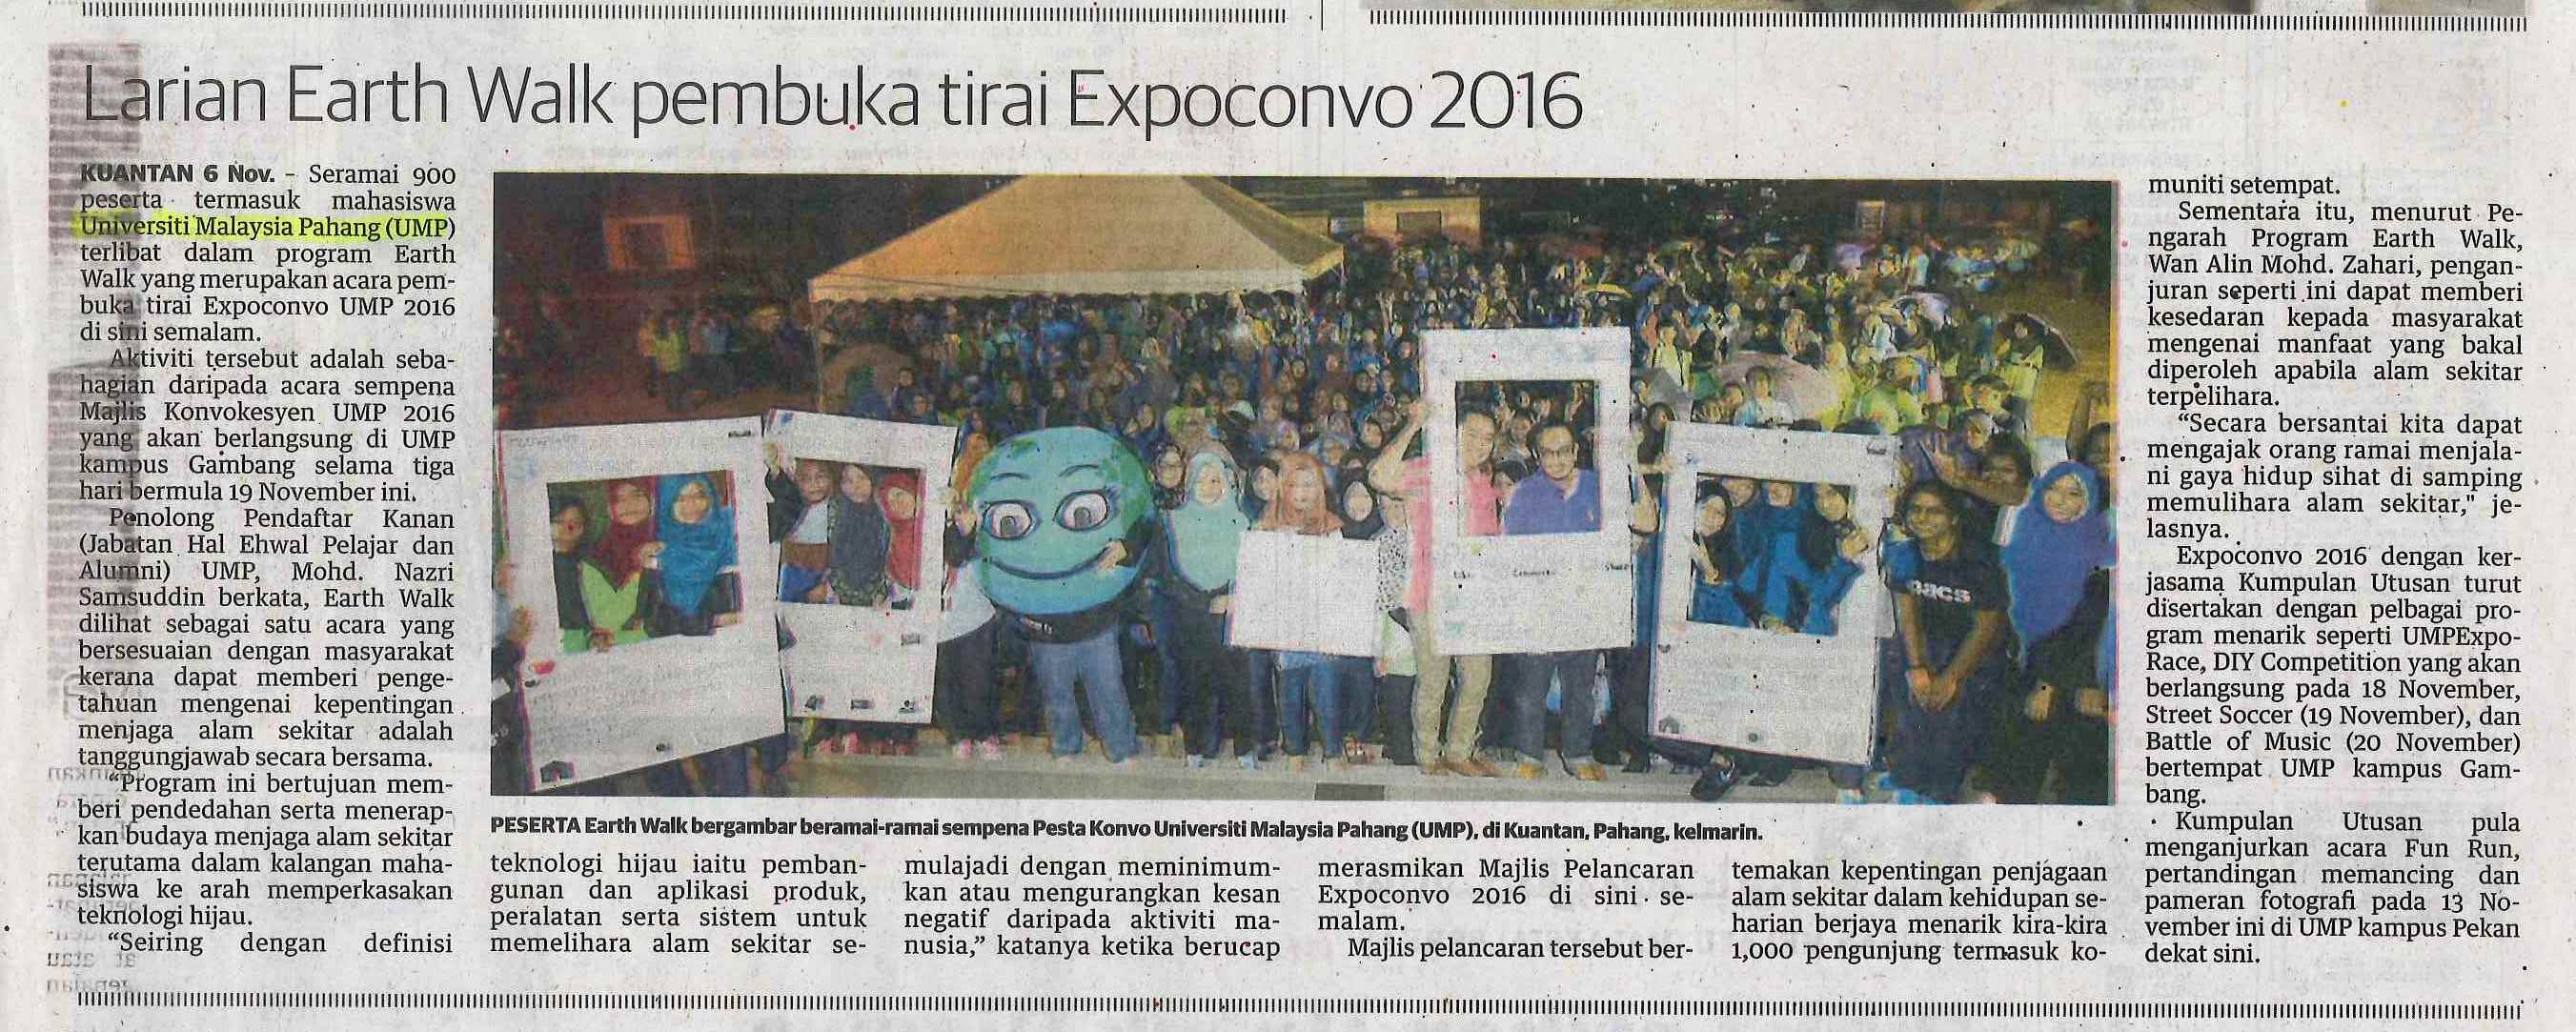 Utusan Malaysia : Larian Earth Walk pembuka tirai Expoconvo 2016